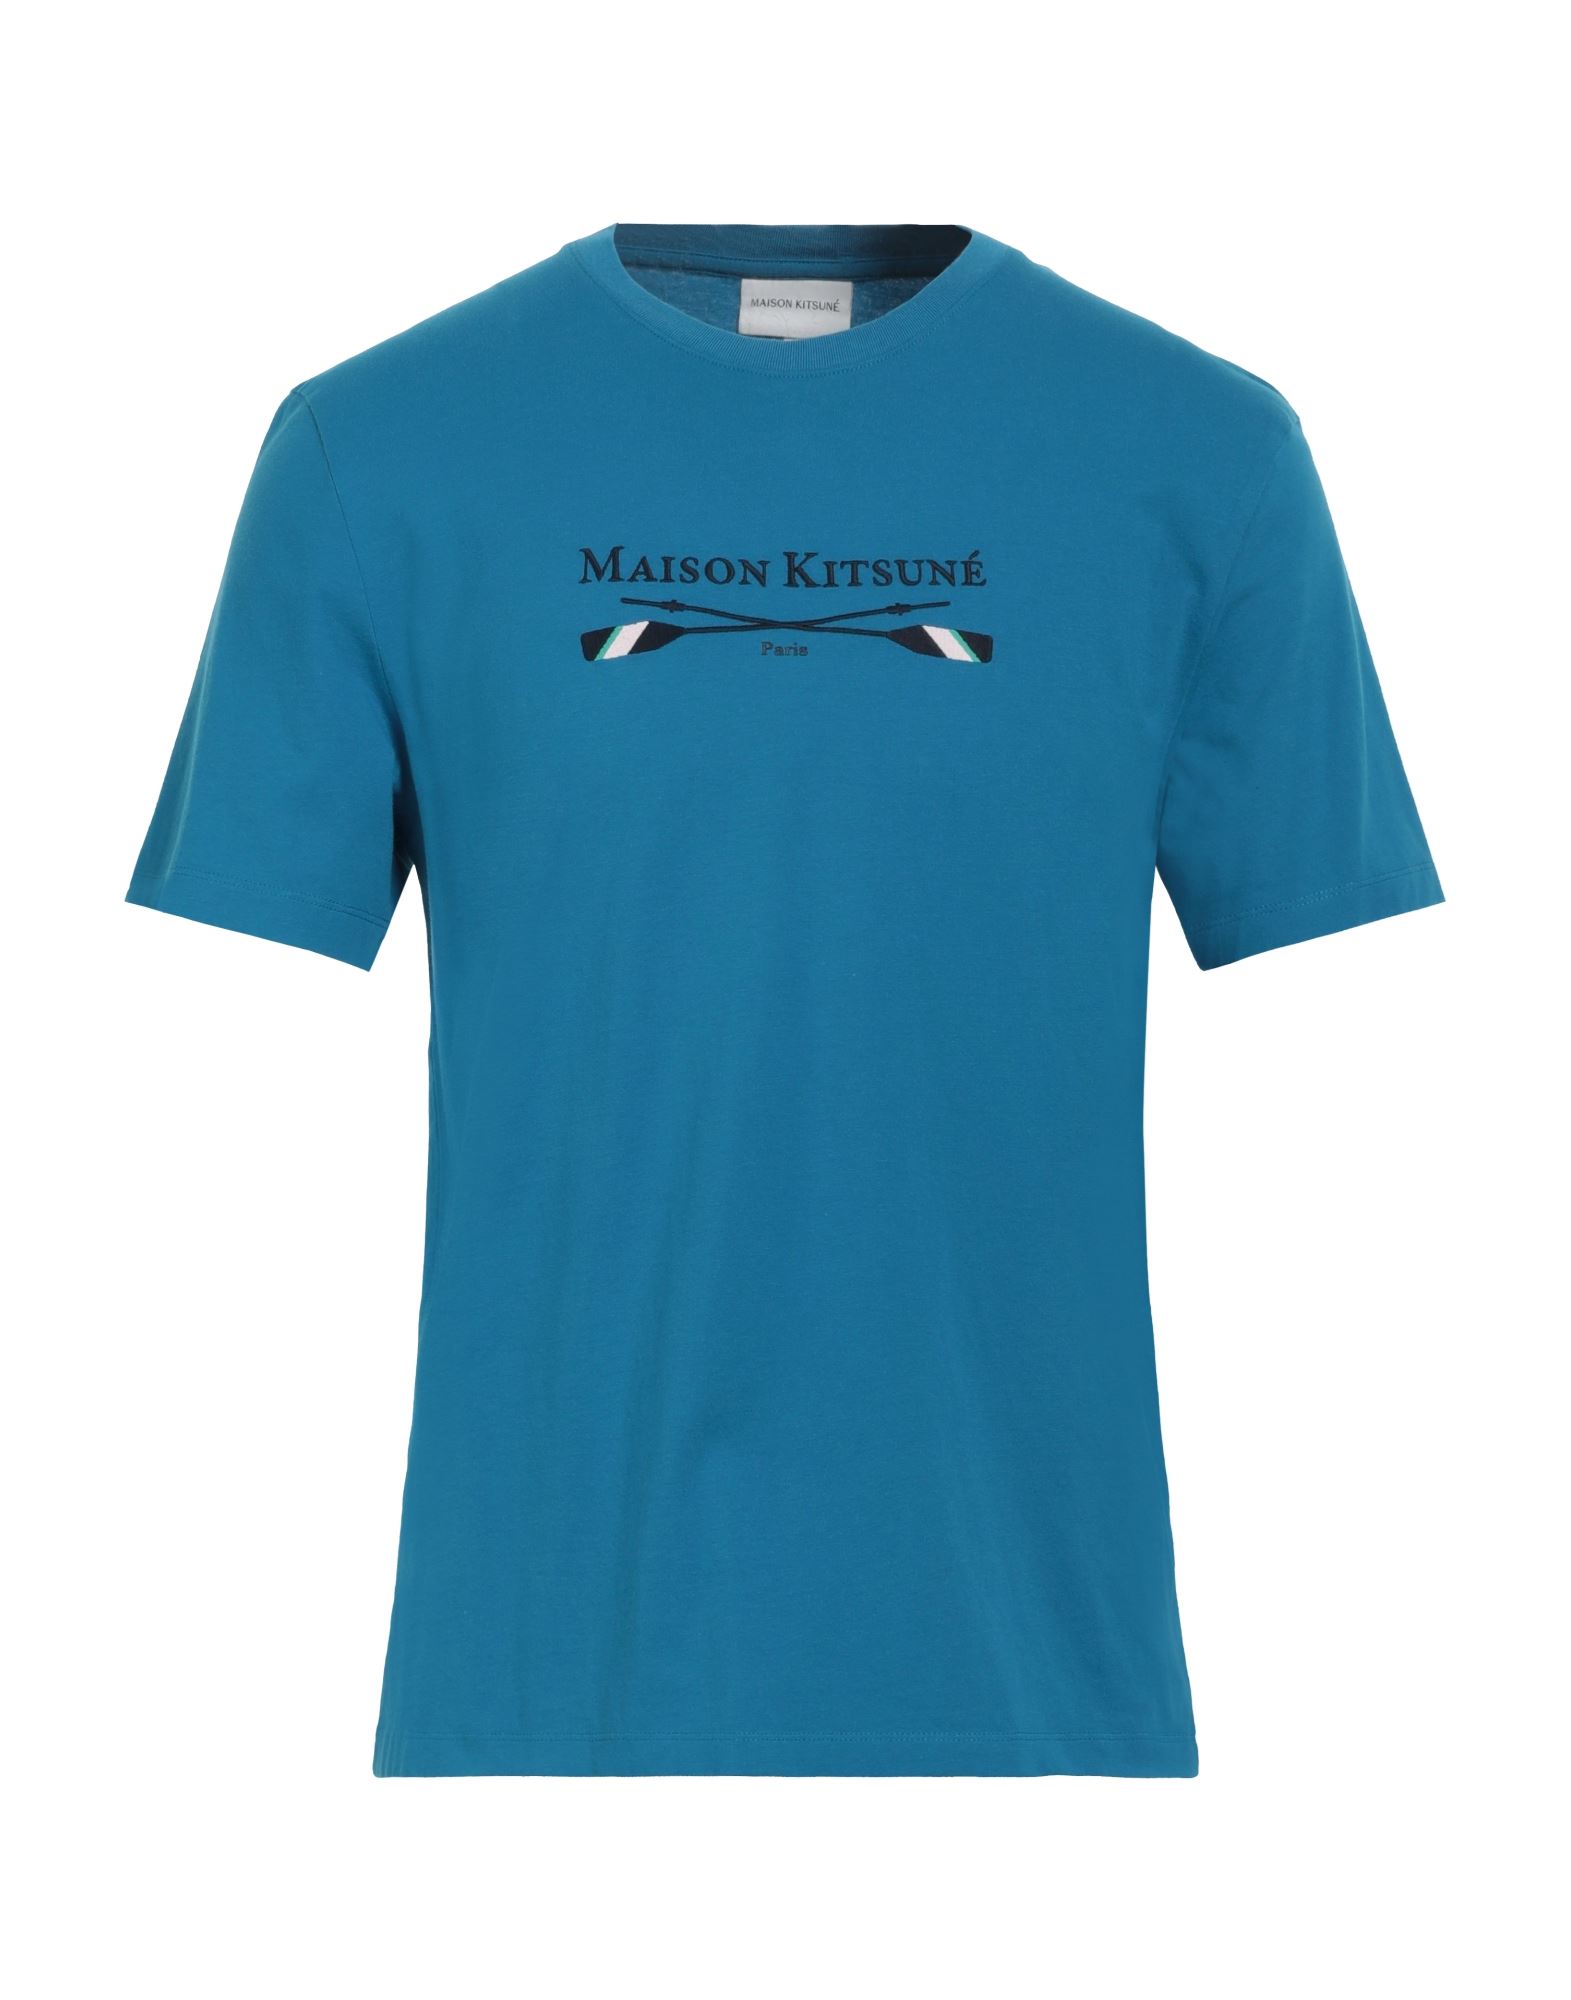 MAISON KITSUNÉ T-shirts Herren Azurblau von MAISON KITSUNÉ